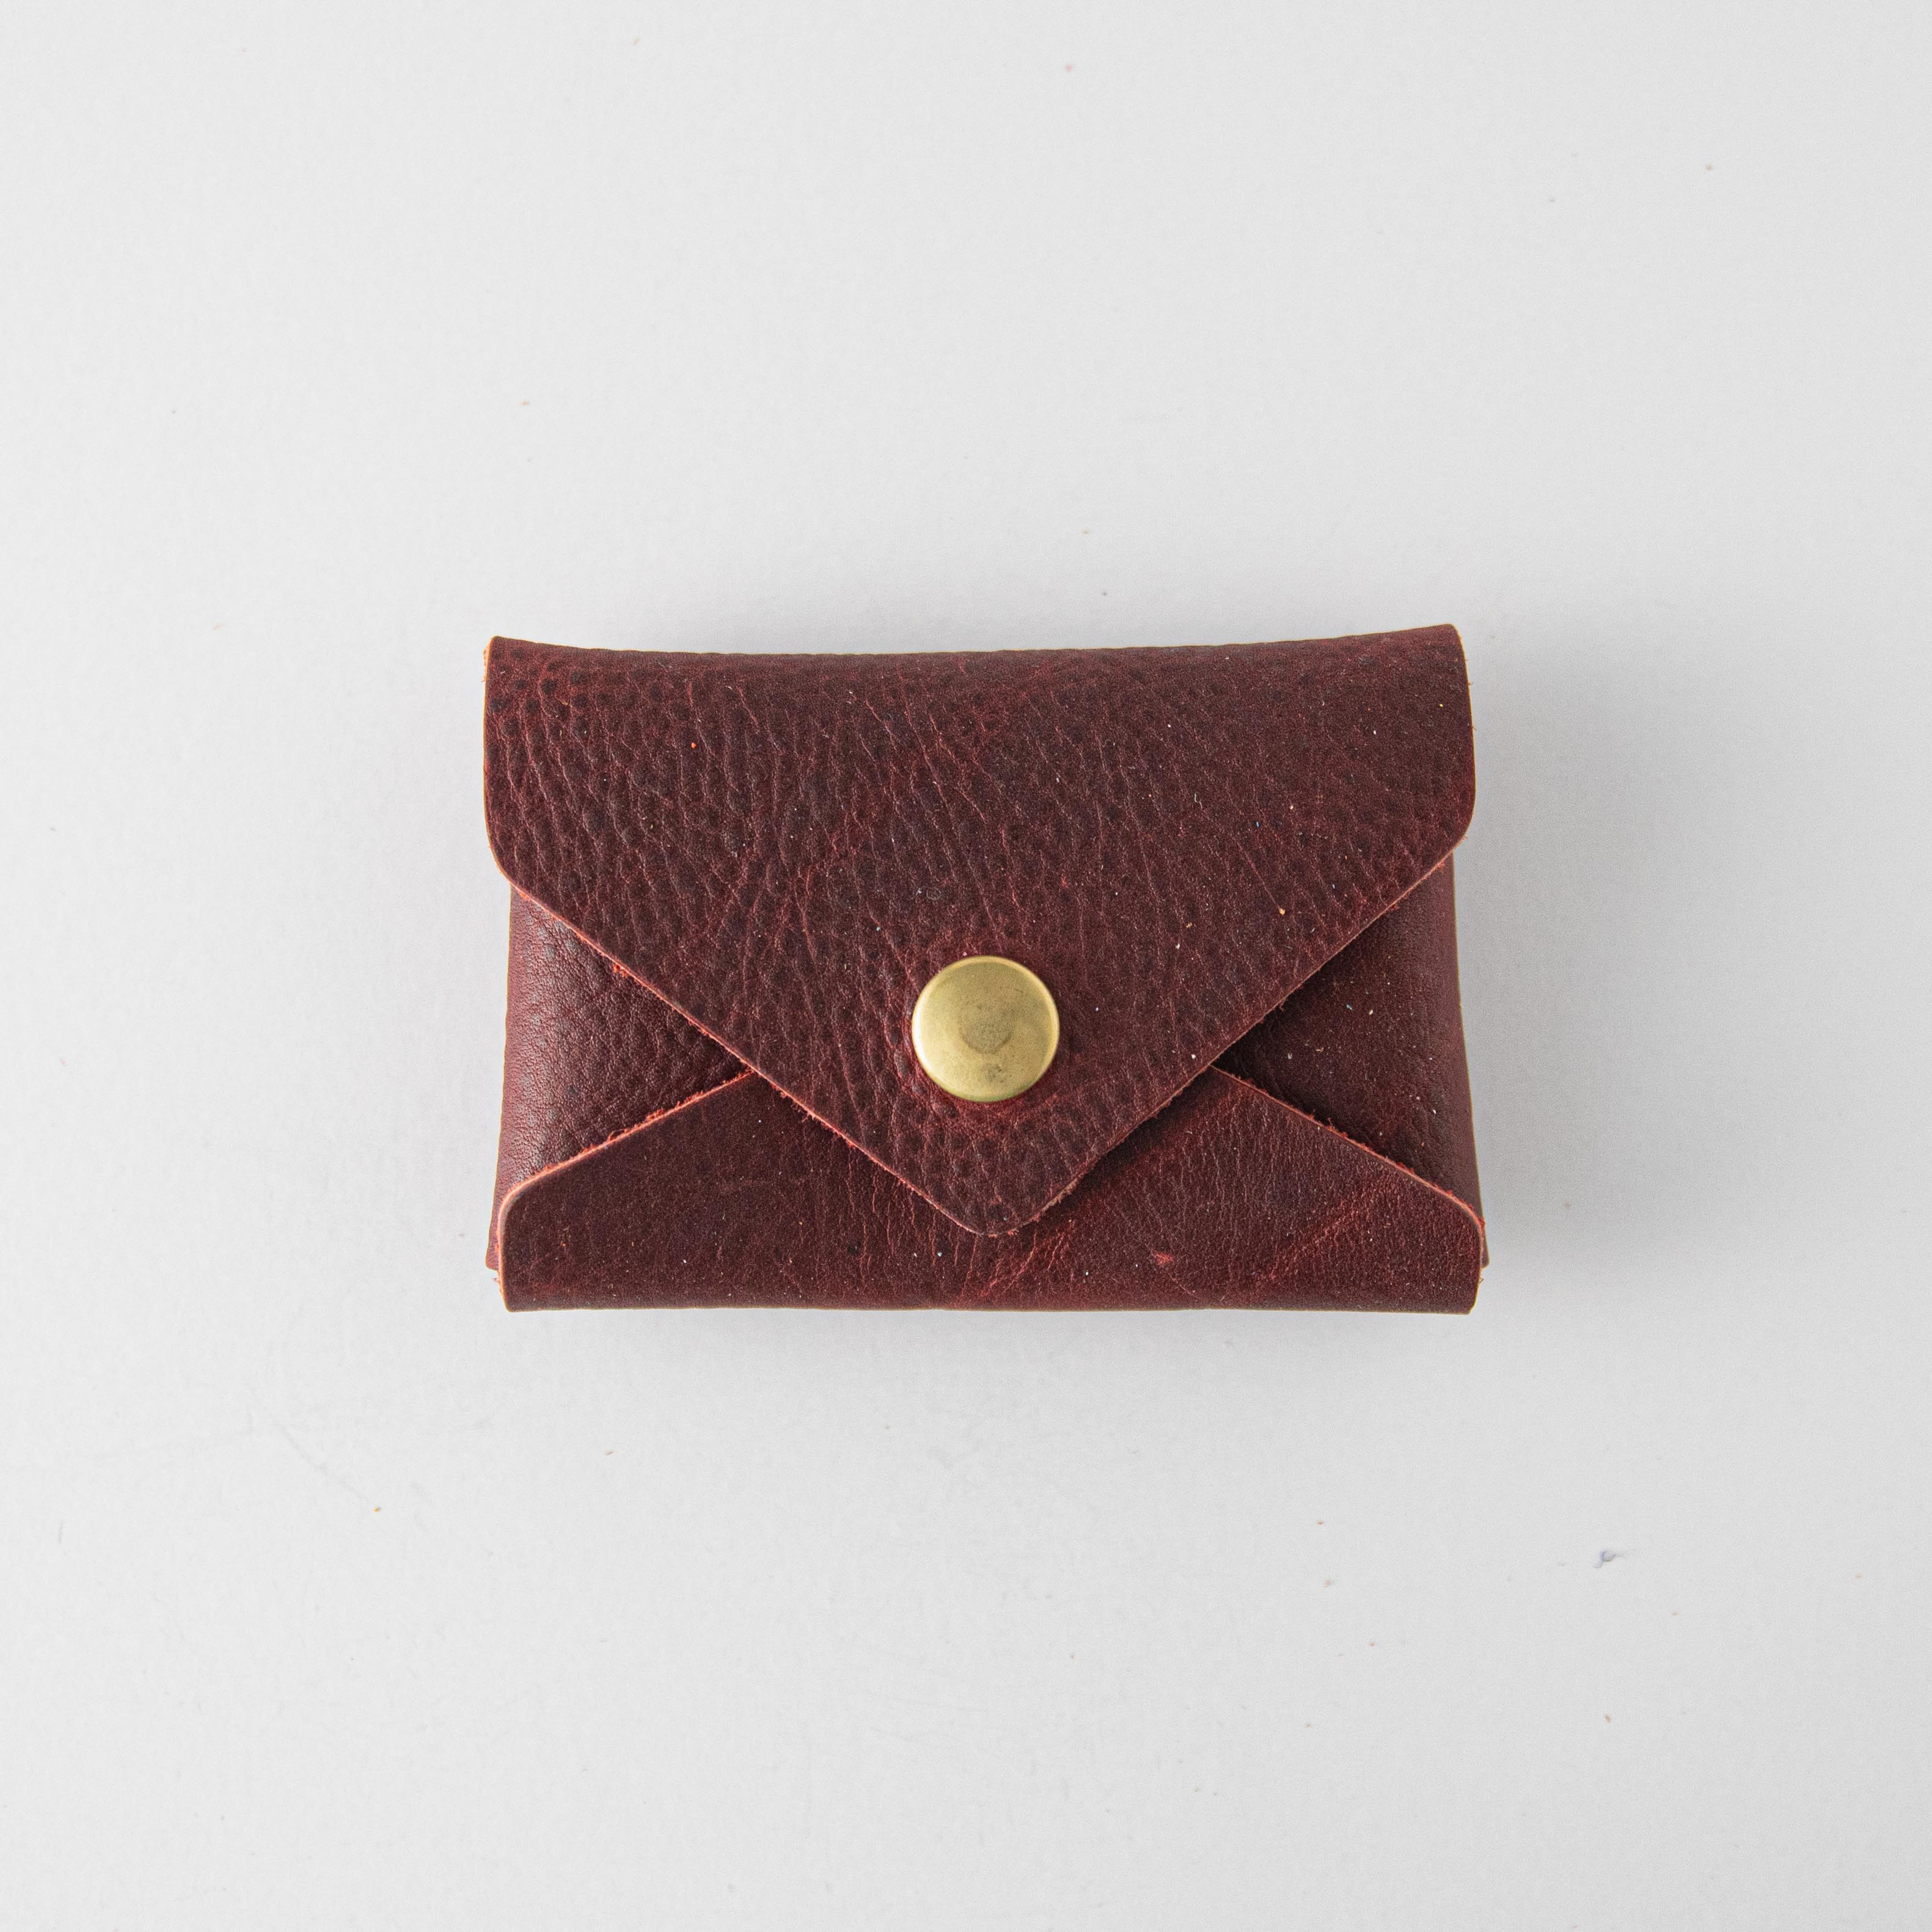 Louis Vuitton Artificial Leather Wallet - Men's Accessories BD